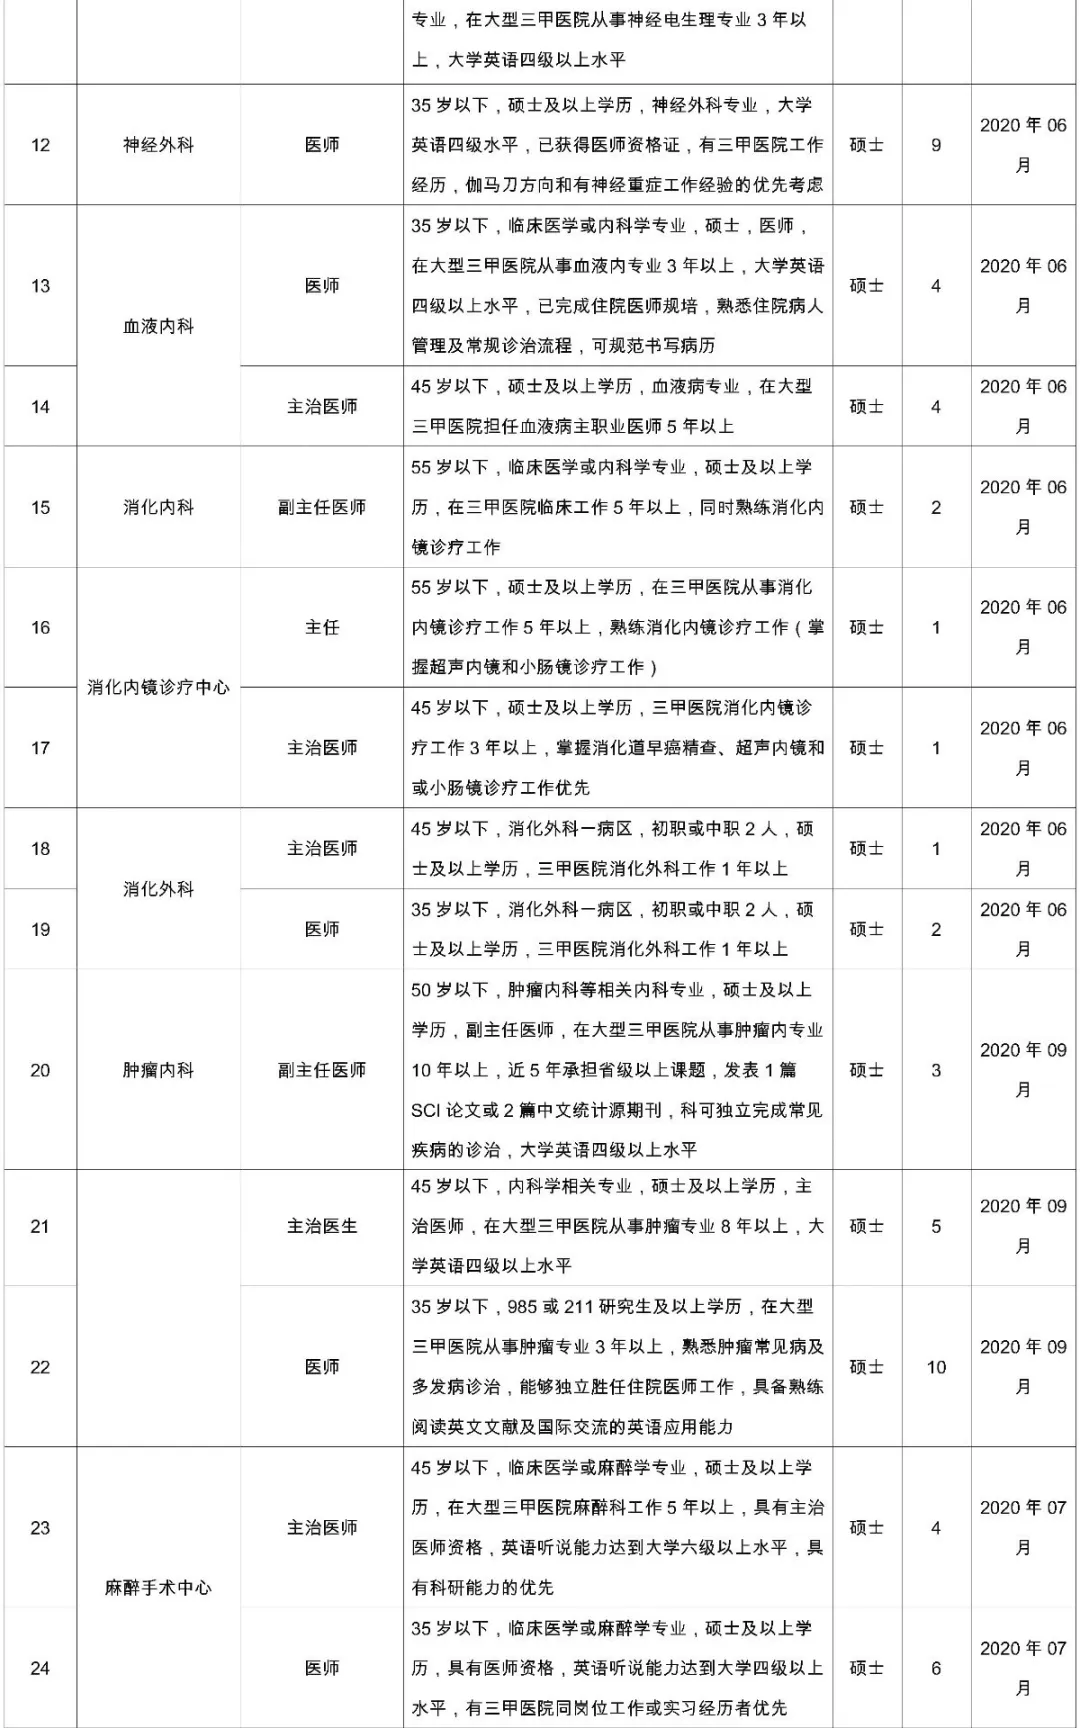 [陕西] 西安国际医学中心医院，2020年招聘医师、医技等161人公告